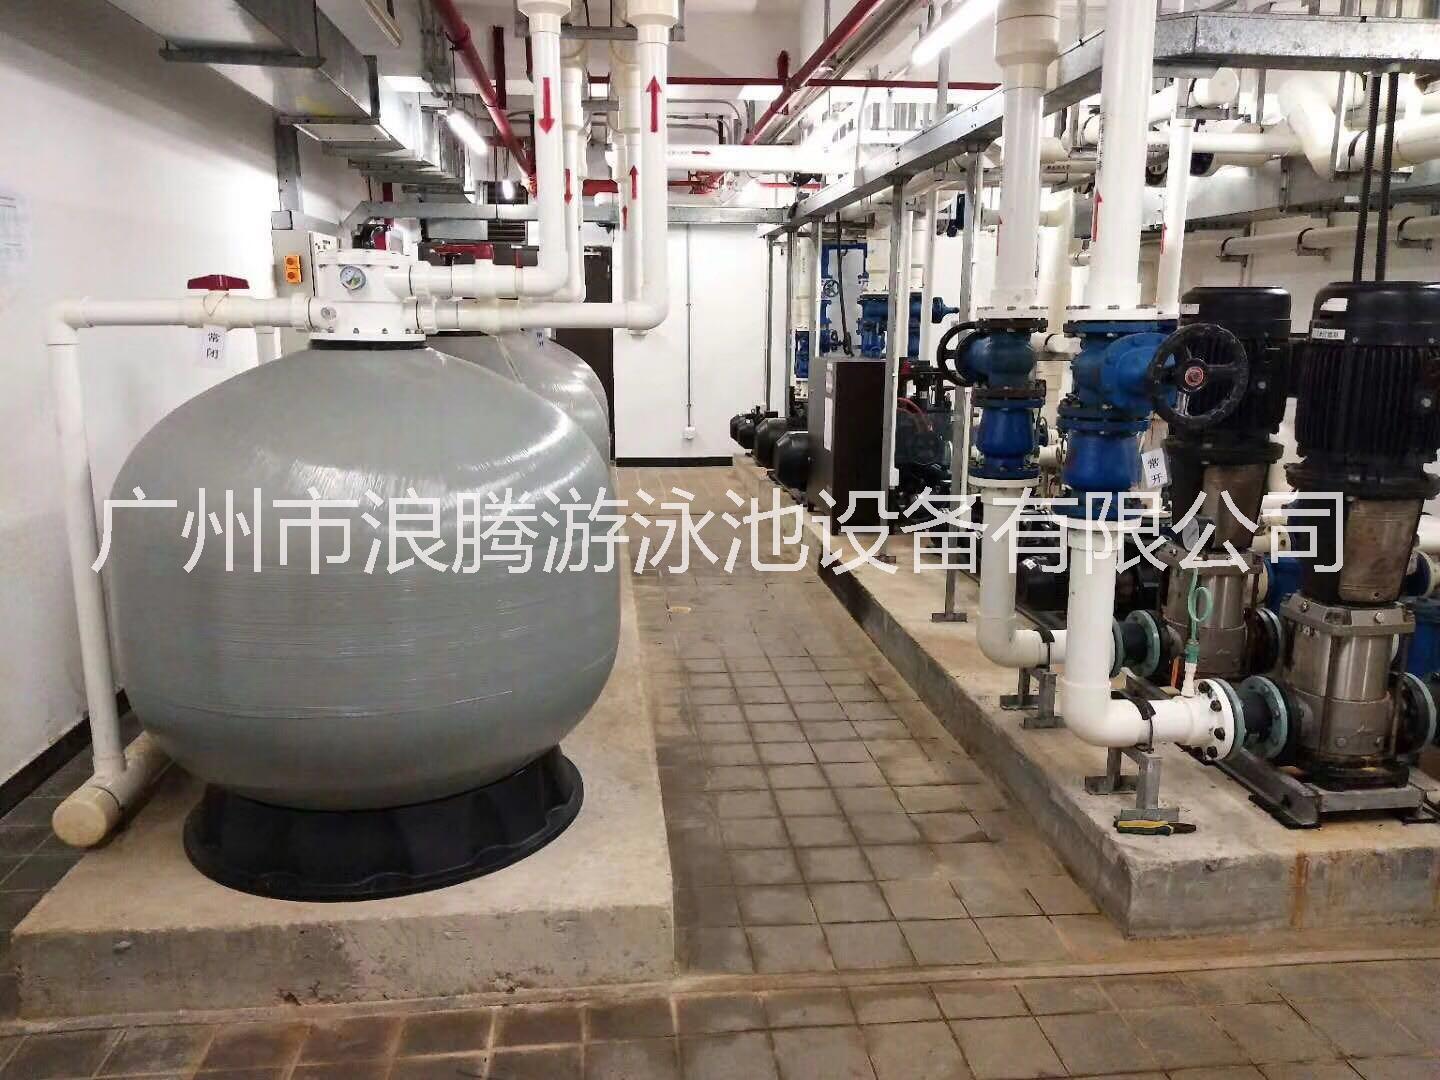 供应北京游泳池设备厂家/水泵、沙缸、吸污机、水下灯、清洁设备、一体机设备、桑拿设备图片